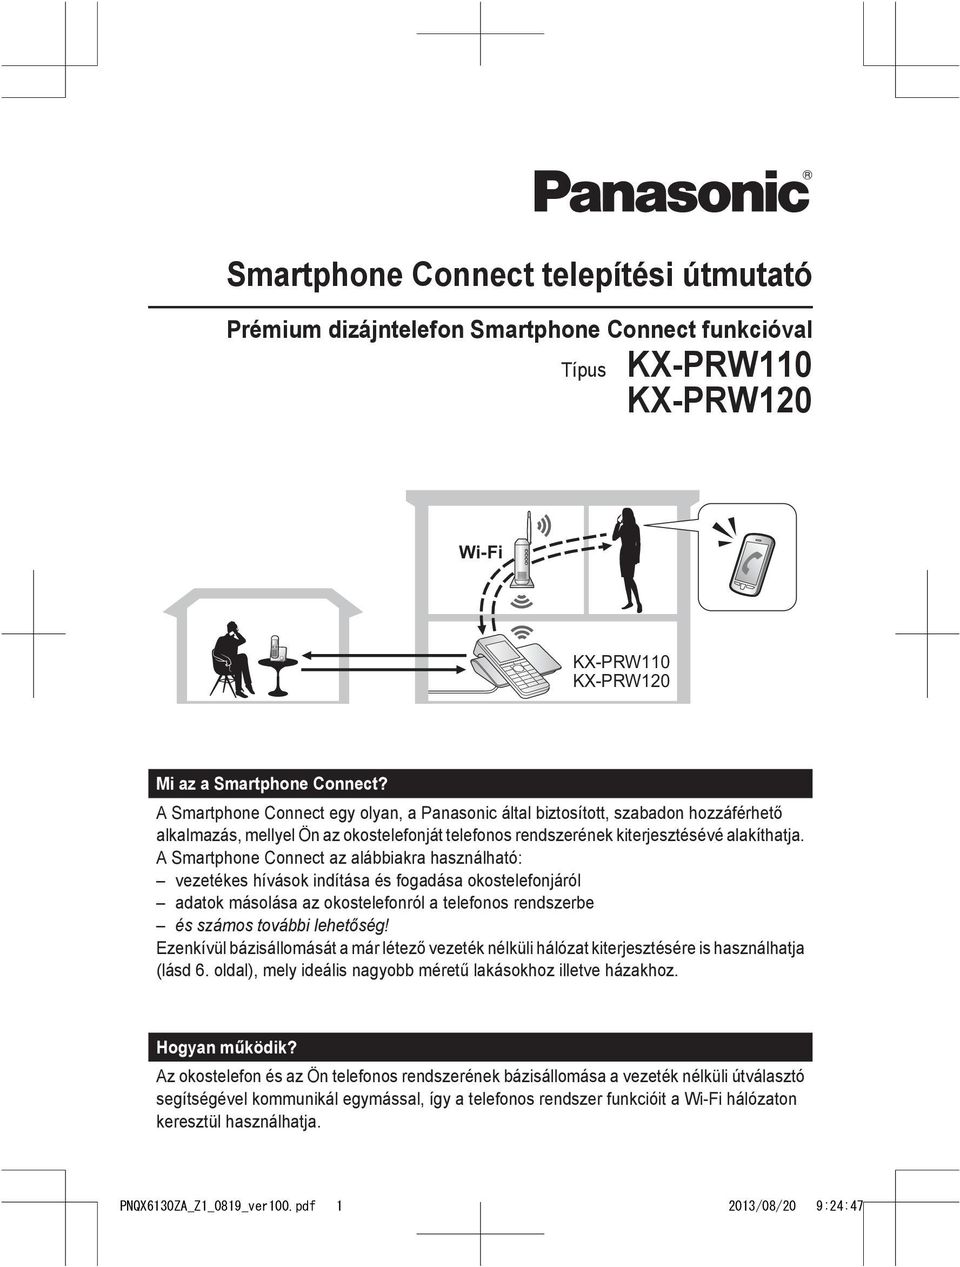 A Smartphone Connect az alábbiakra használható: vezetékes hívások indítása és fogadása okostelefonjáról adatok másolása az okostelefonról a telefonos rendszerbe és számos további lehetőség!